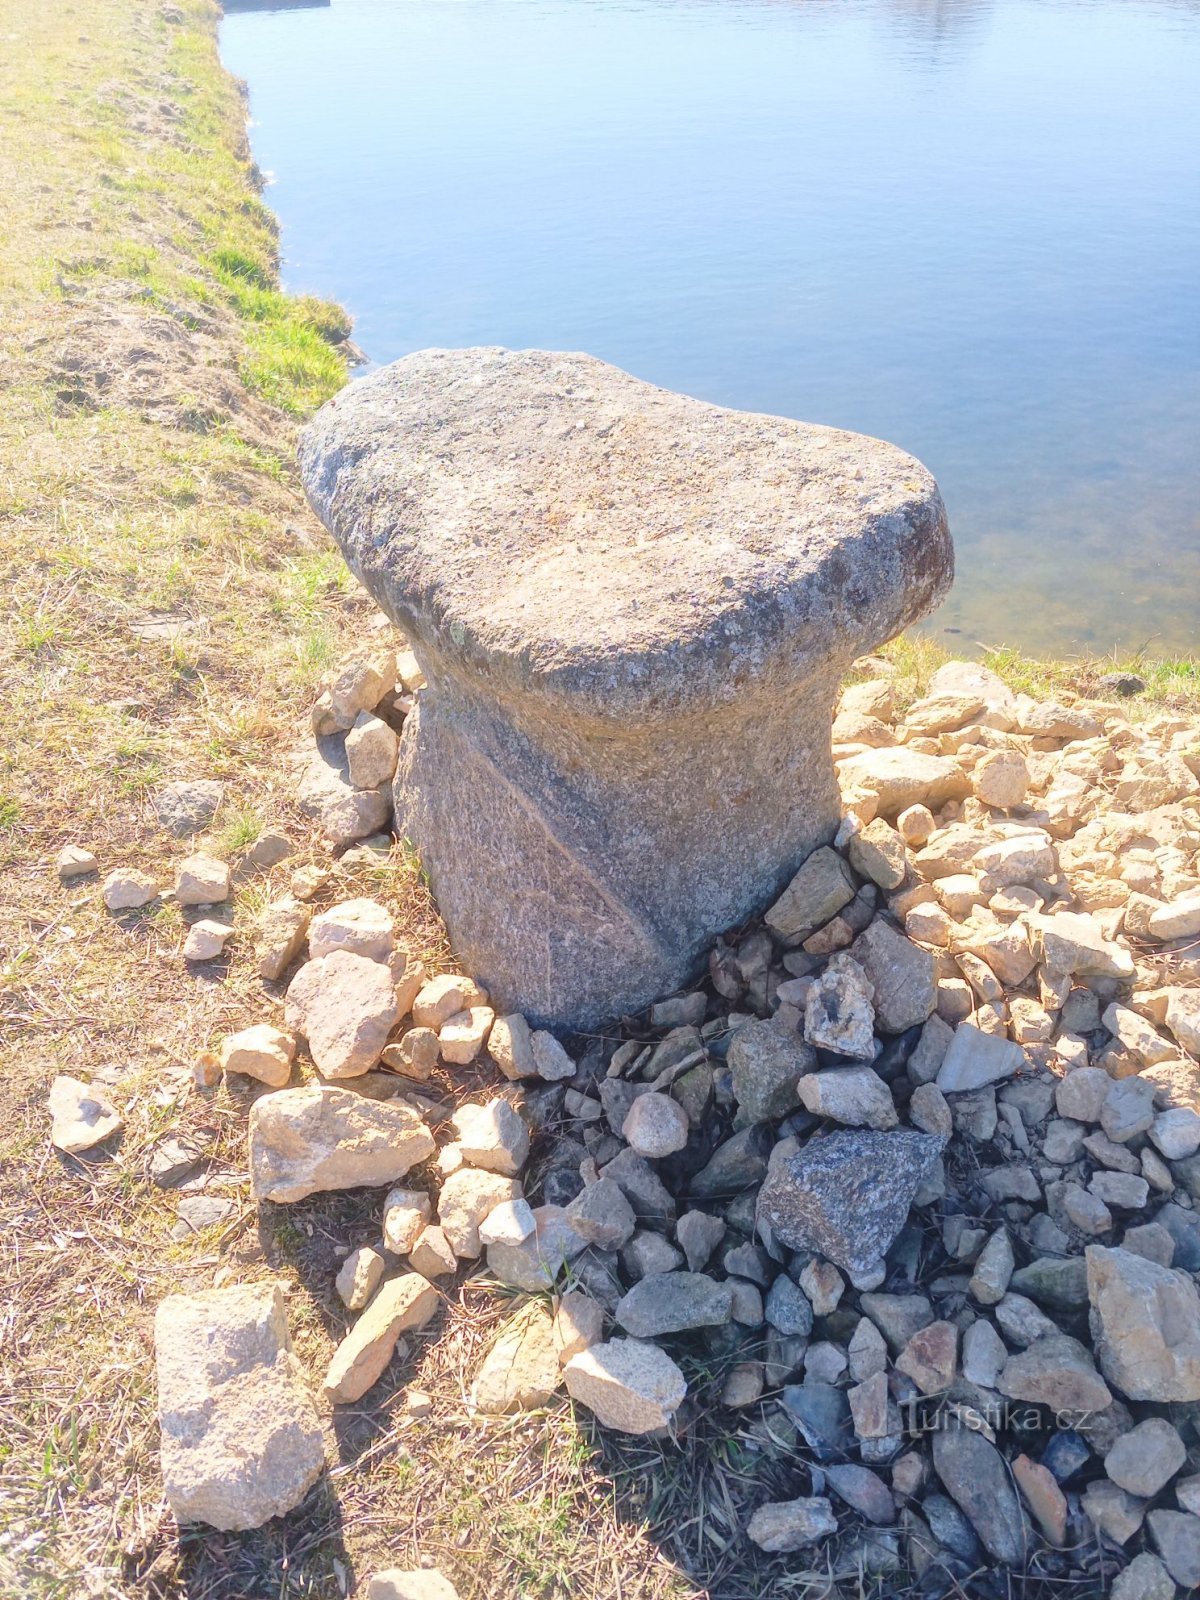 1. Mesa de piedra cerca de Nový Dvorů pescada en 1991 en el estanque local, ND1